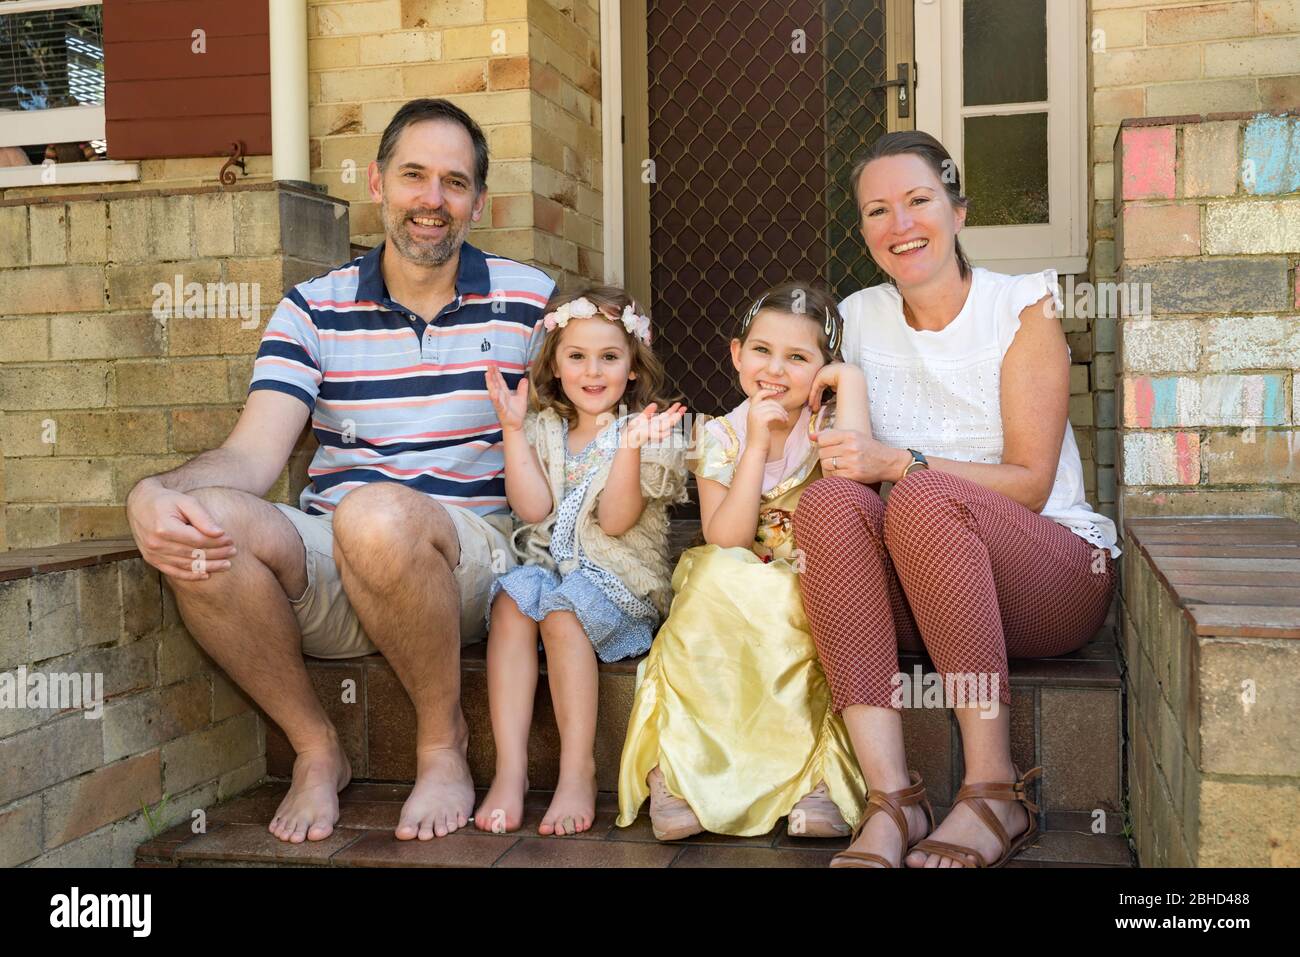 Une famille zimbabwéenne souriante vivant en Australie s'assoit aux premières marches de leur maison de Sydney pendant l'épidémie de Covid-19. Banque D'Images